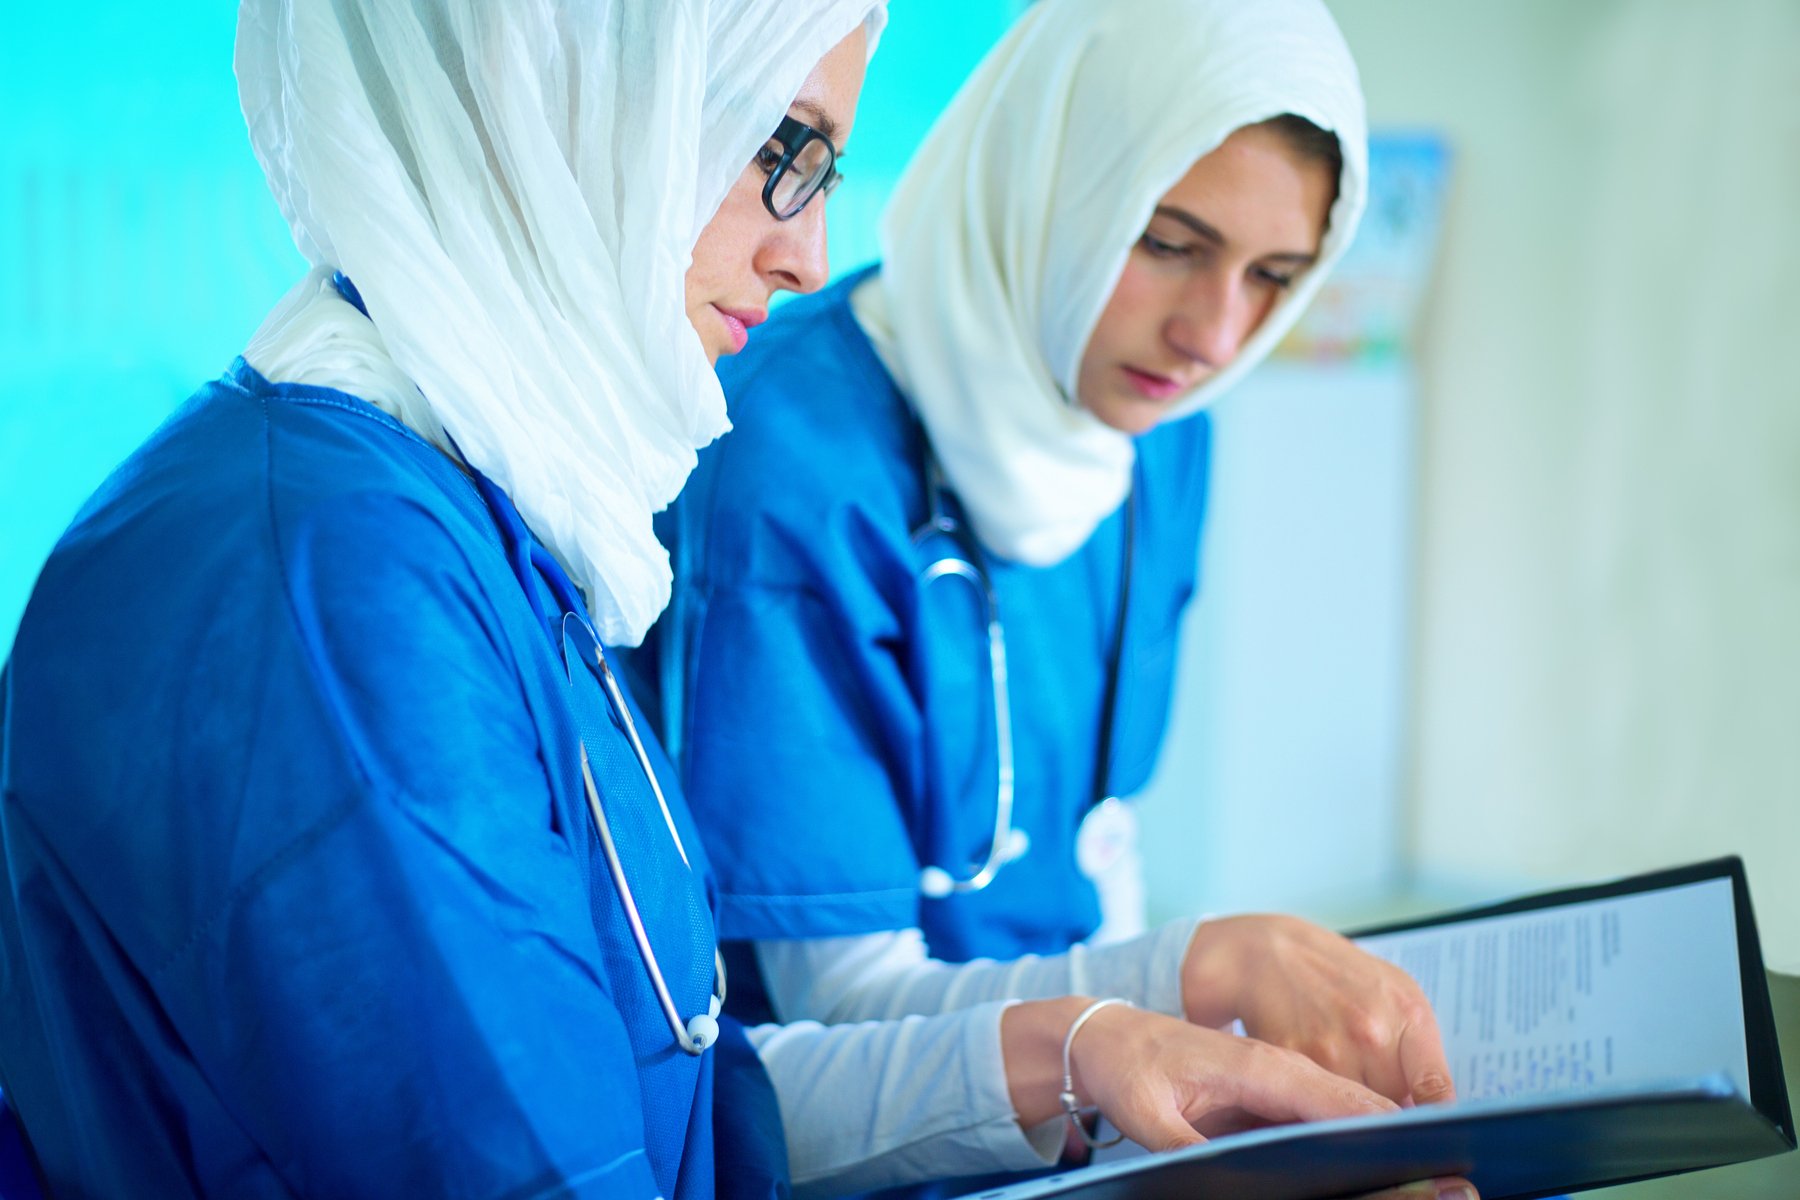 Катар медицина. Хиджаб в медицинском вузе. Хиджаб и медицина. Медицина в ОАЭ. Мусульманский врач.